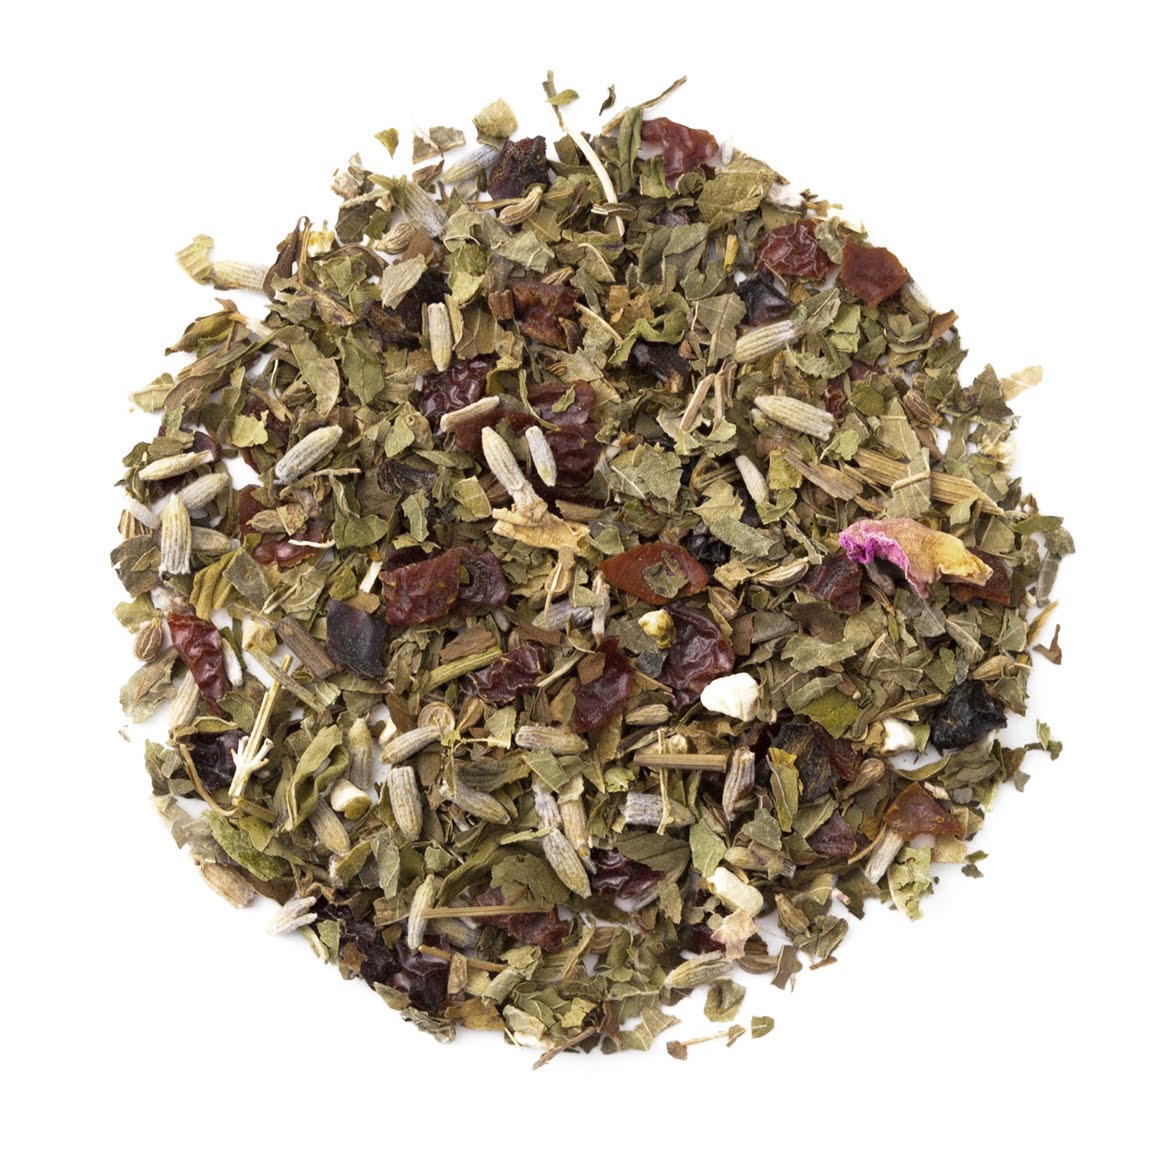 Organic Herbal Cleanse - Bulk Loose Leaf Herbal Tea - Detoxifying Tea | Heavenly Tea Leaves